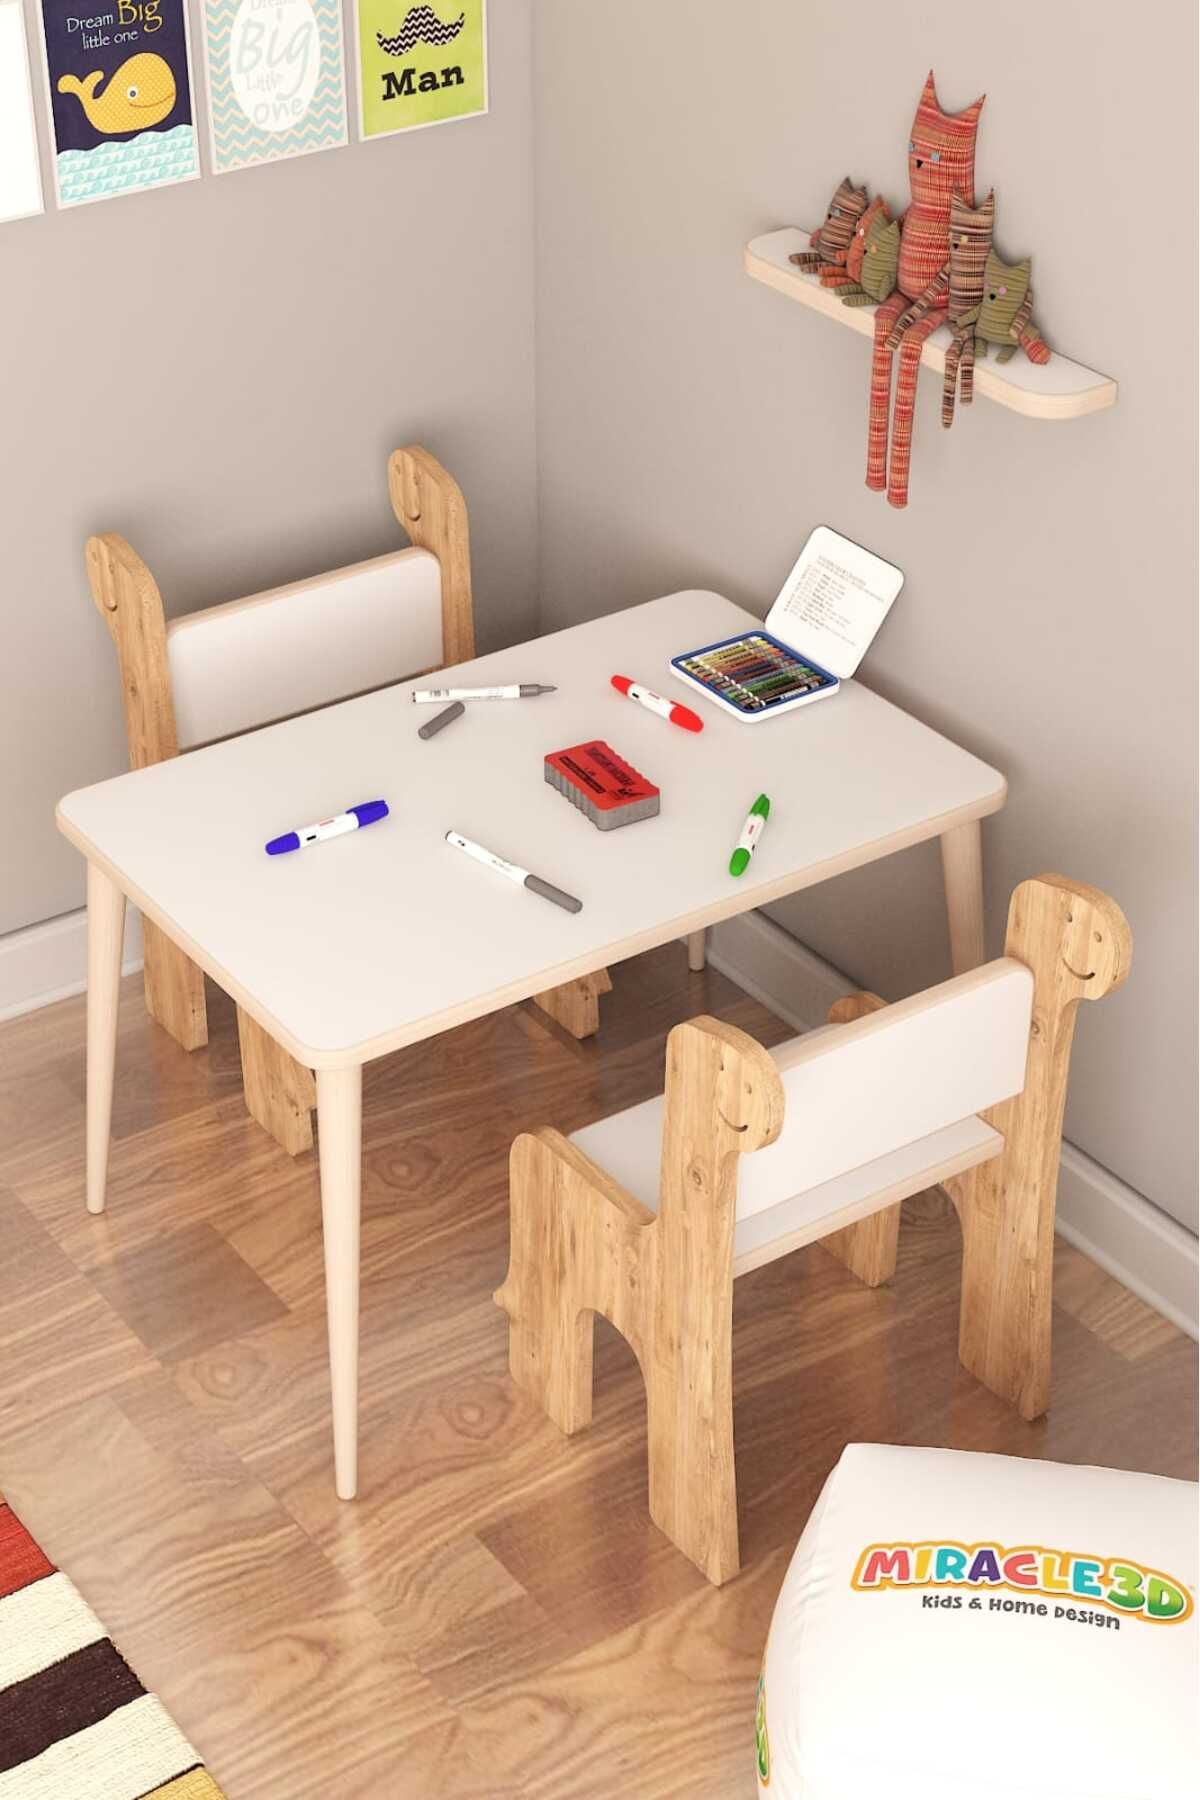 MİRACLE 3D Çocuk Çalışma Masası Ve Sandalye, Aktivite Masası